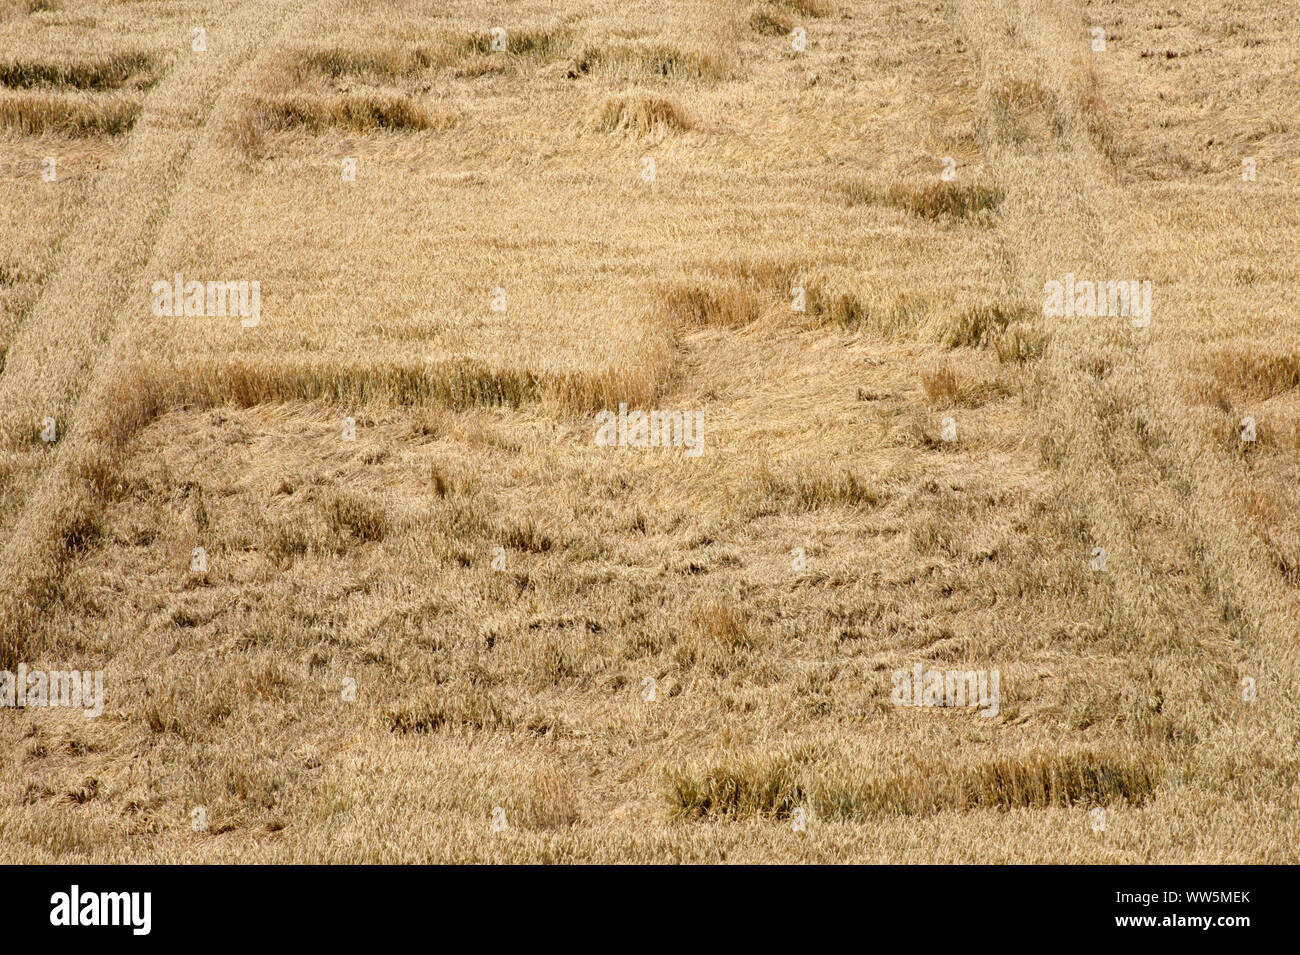 Photographie d'un champ de céréales en vue d'ensemble, Banque D'Images